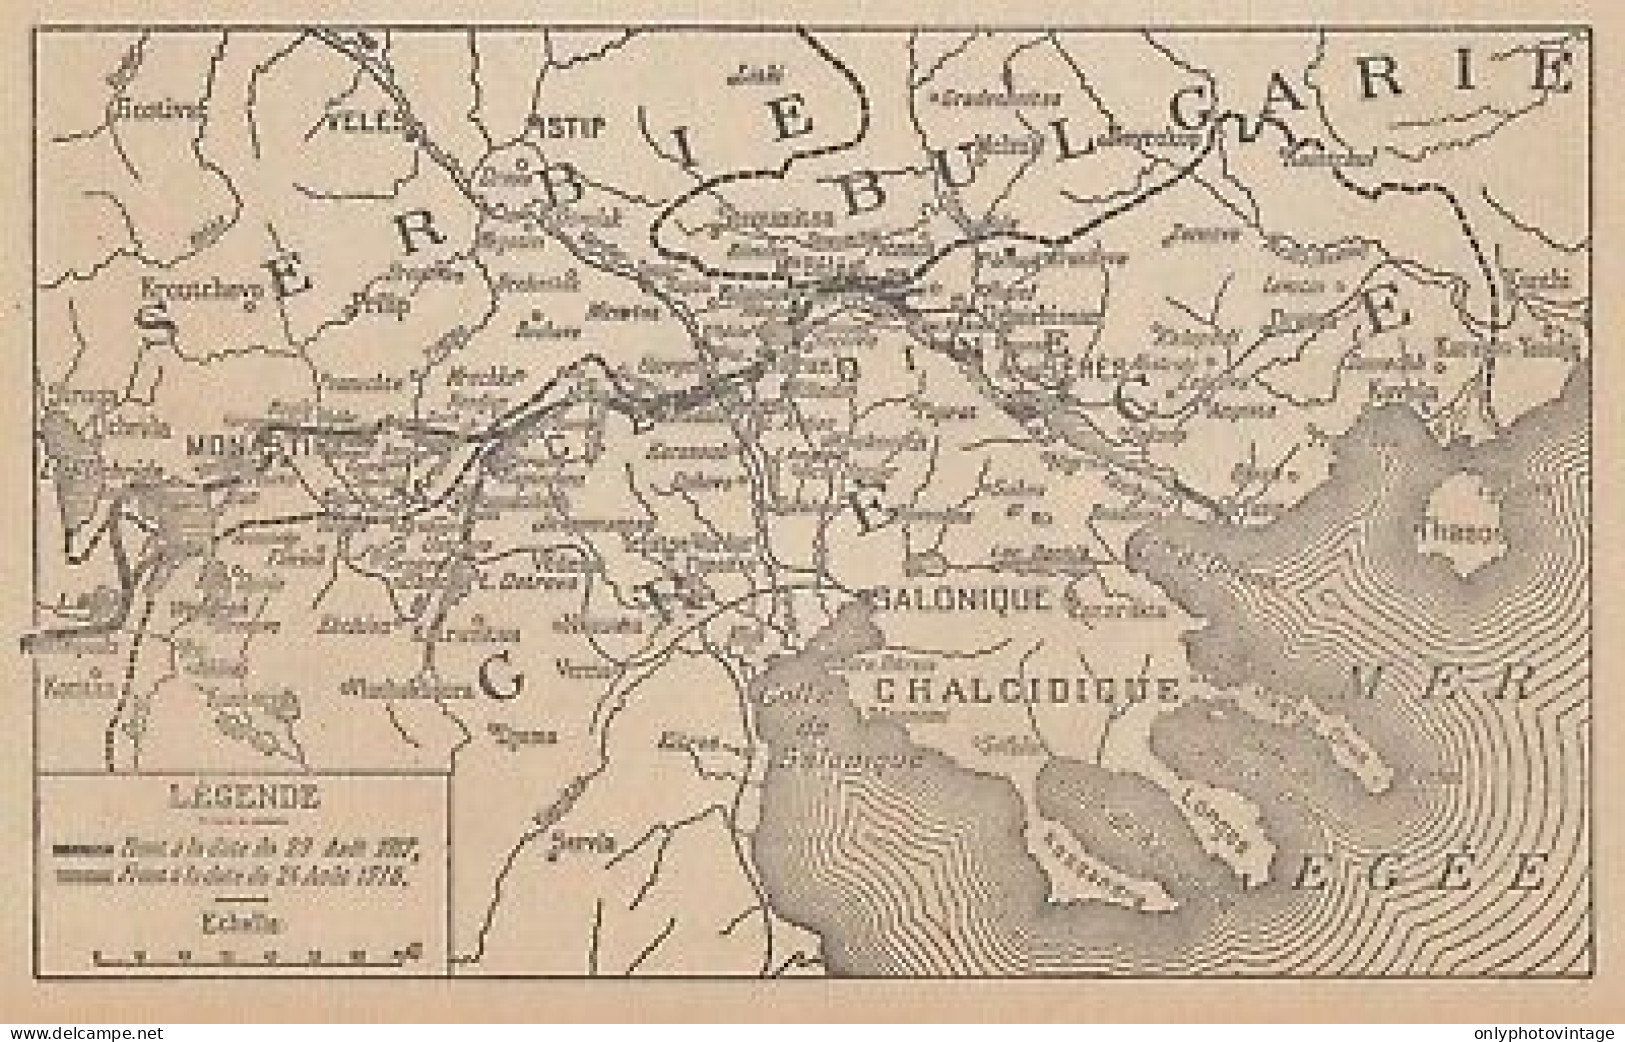 Première Guerre Mondiale - Les Opérations En Orient - 1917 Vintage Map - Geographical Maps